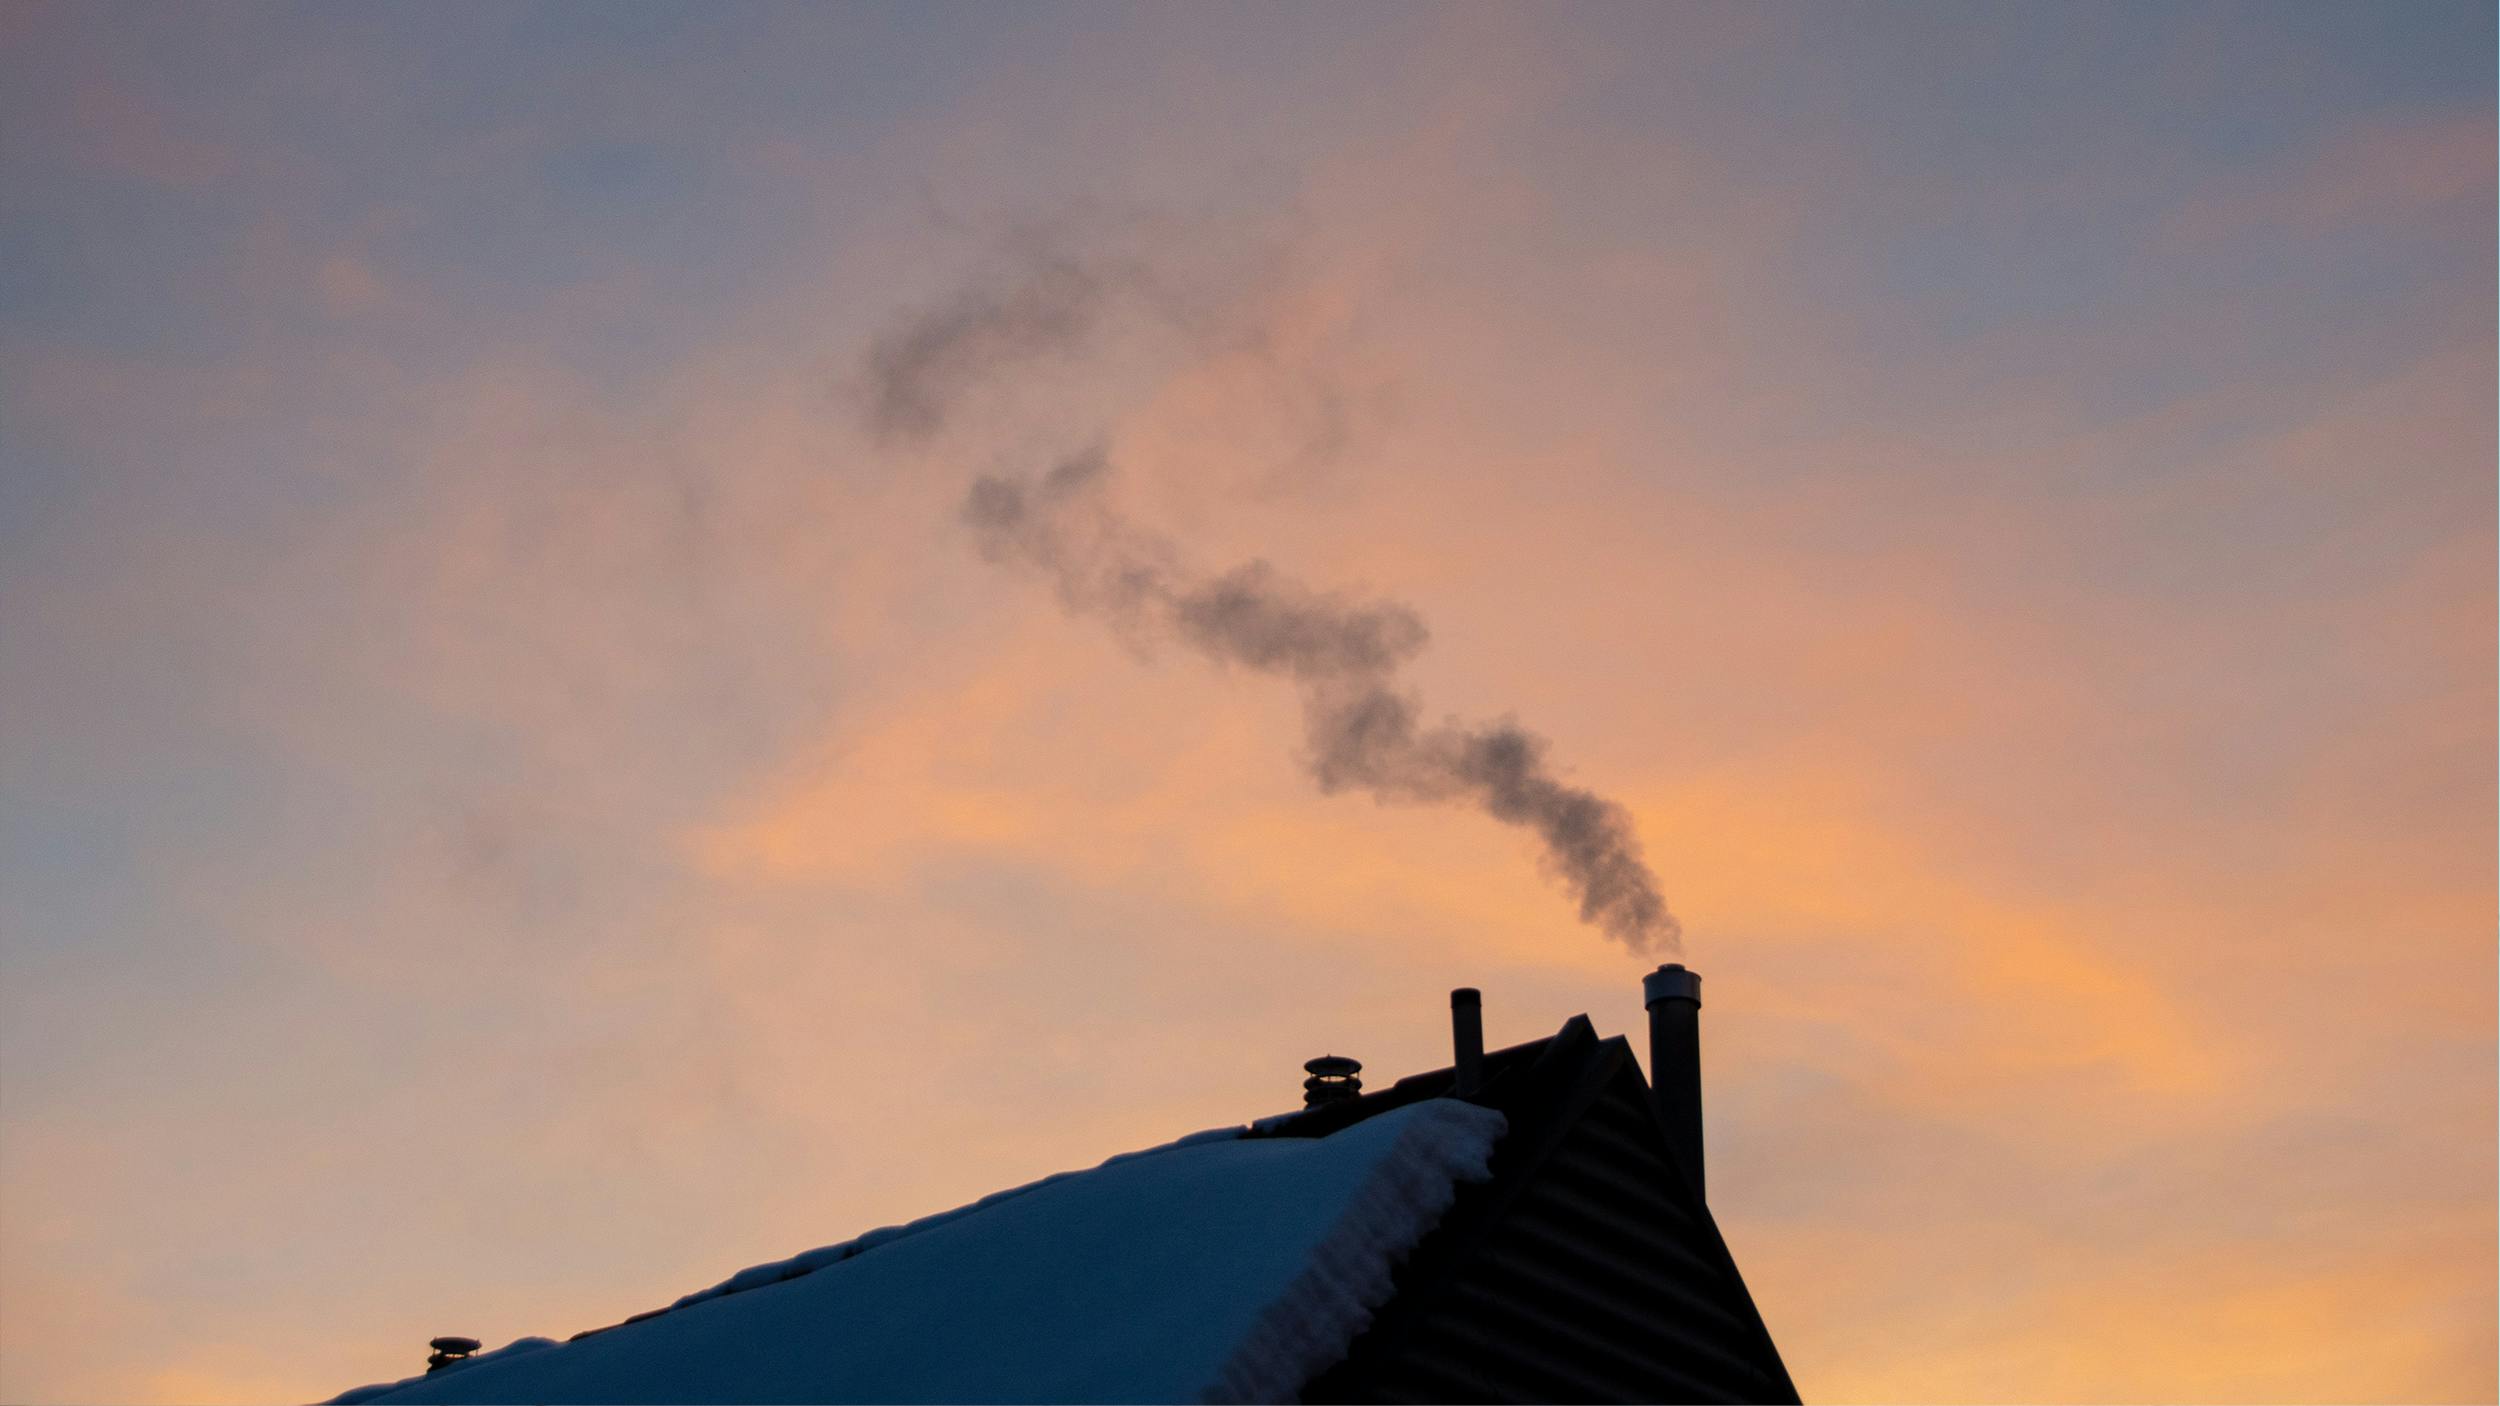 Ein schneebedecktes Dach bei Sonnenuntergang. Aus dem Schornstein steigt Rauch auf.